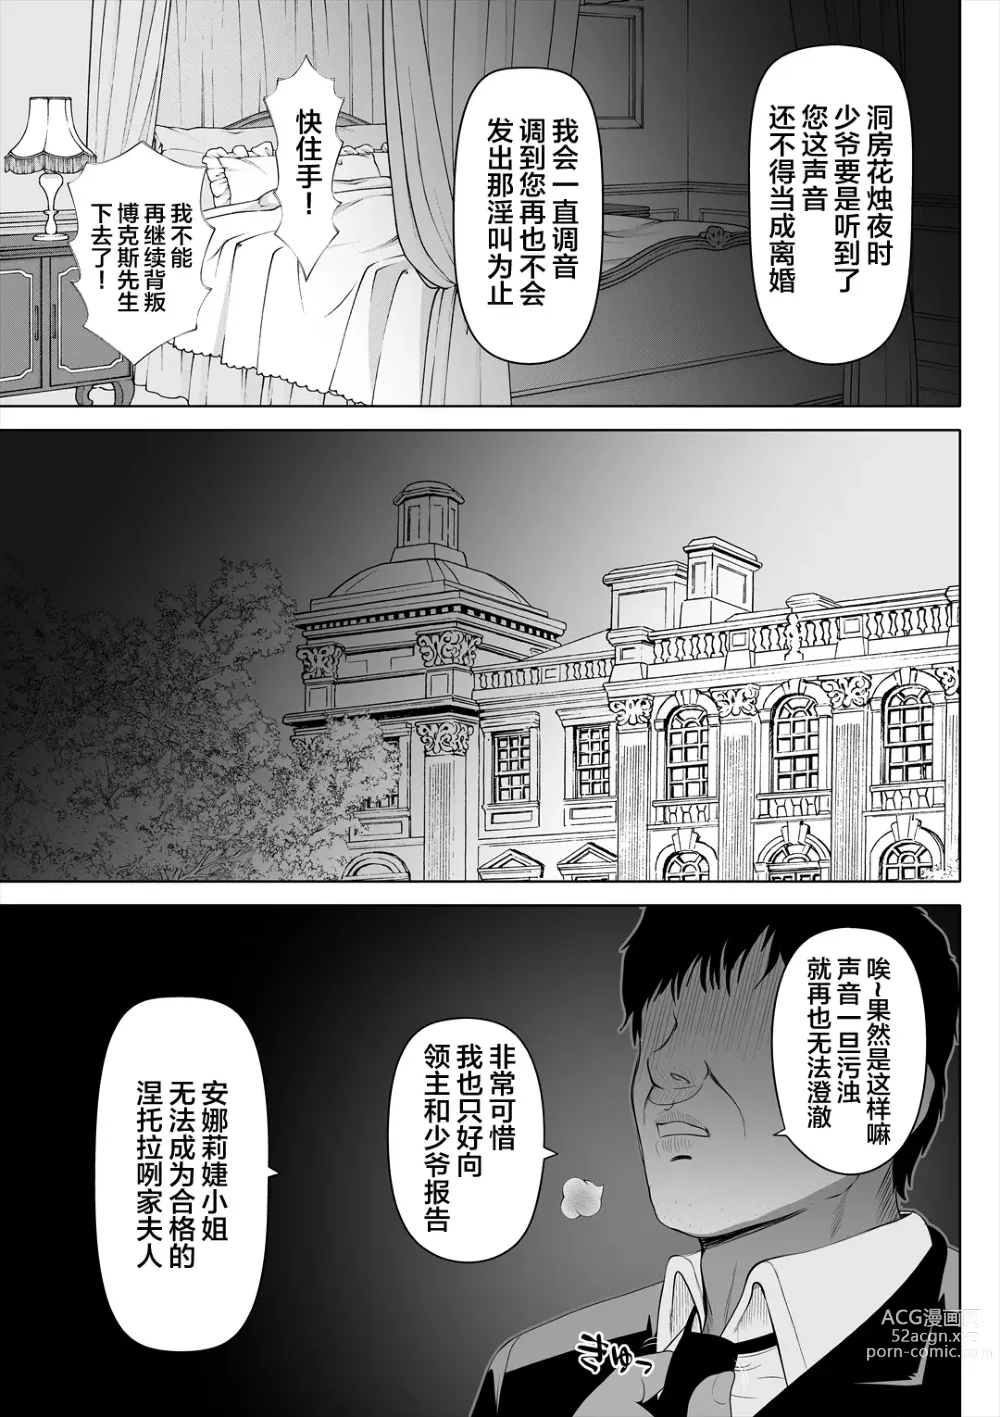 Page 26 of doujinshi Kyousei no hanayome 〜 kegareta chouritsu 〜